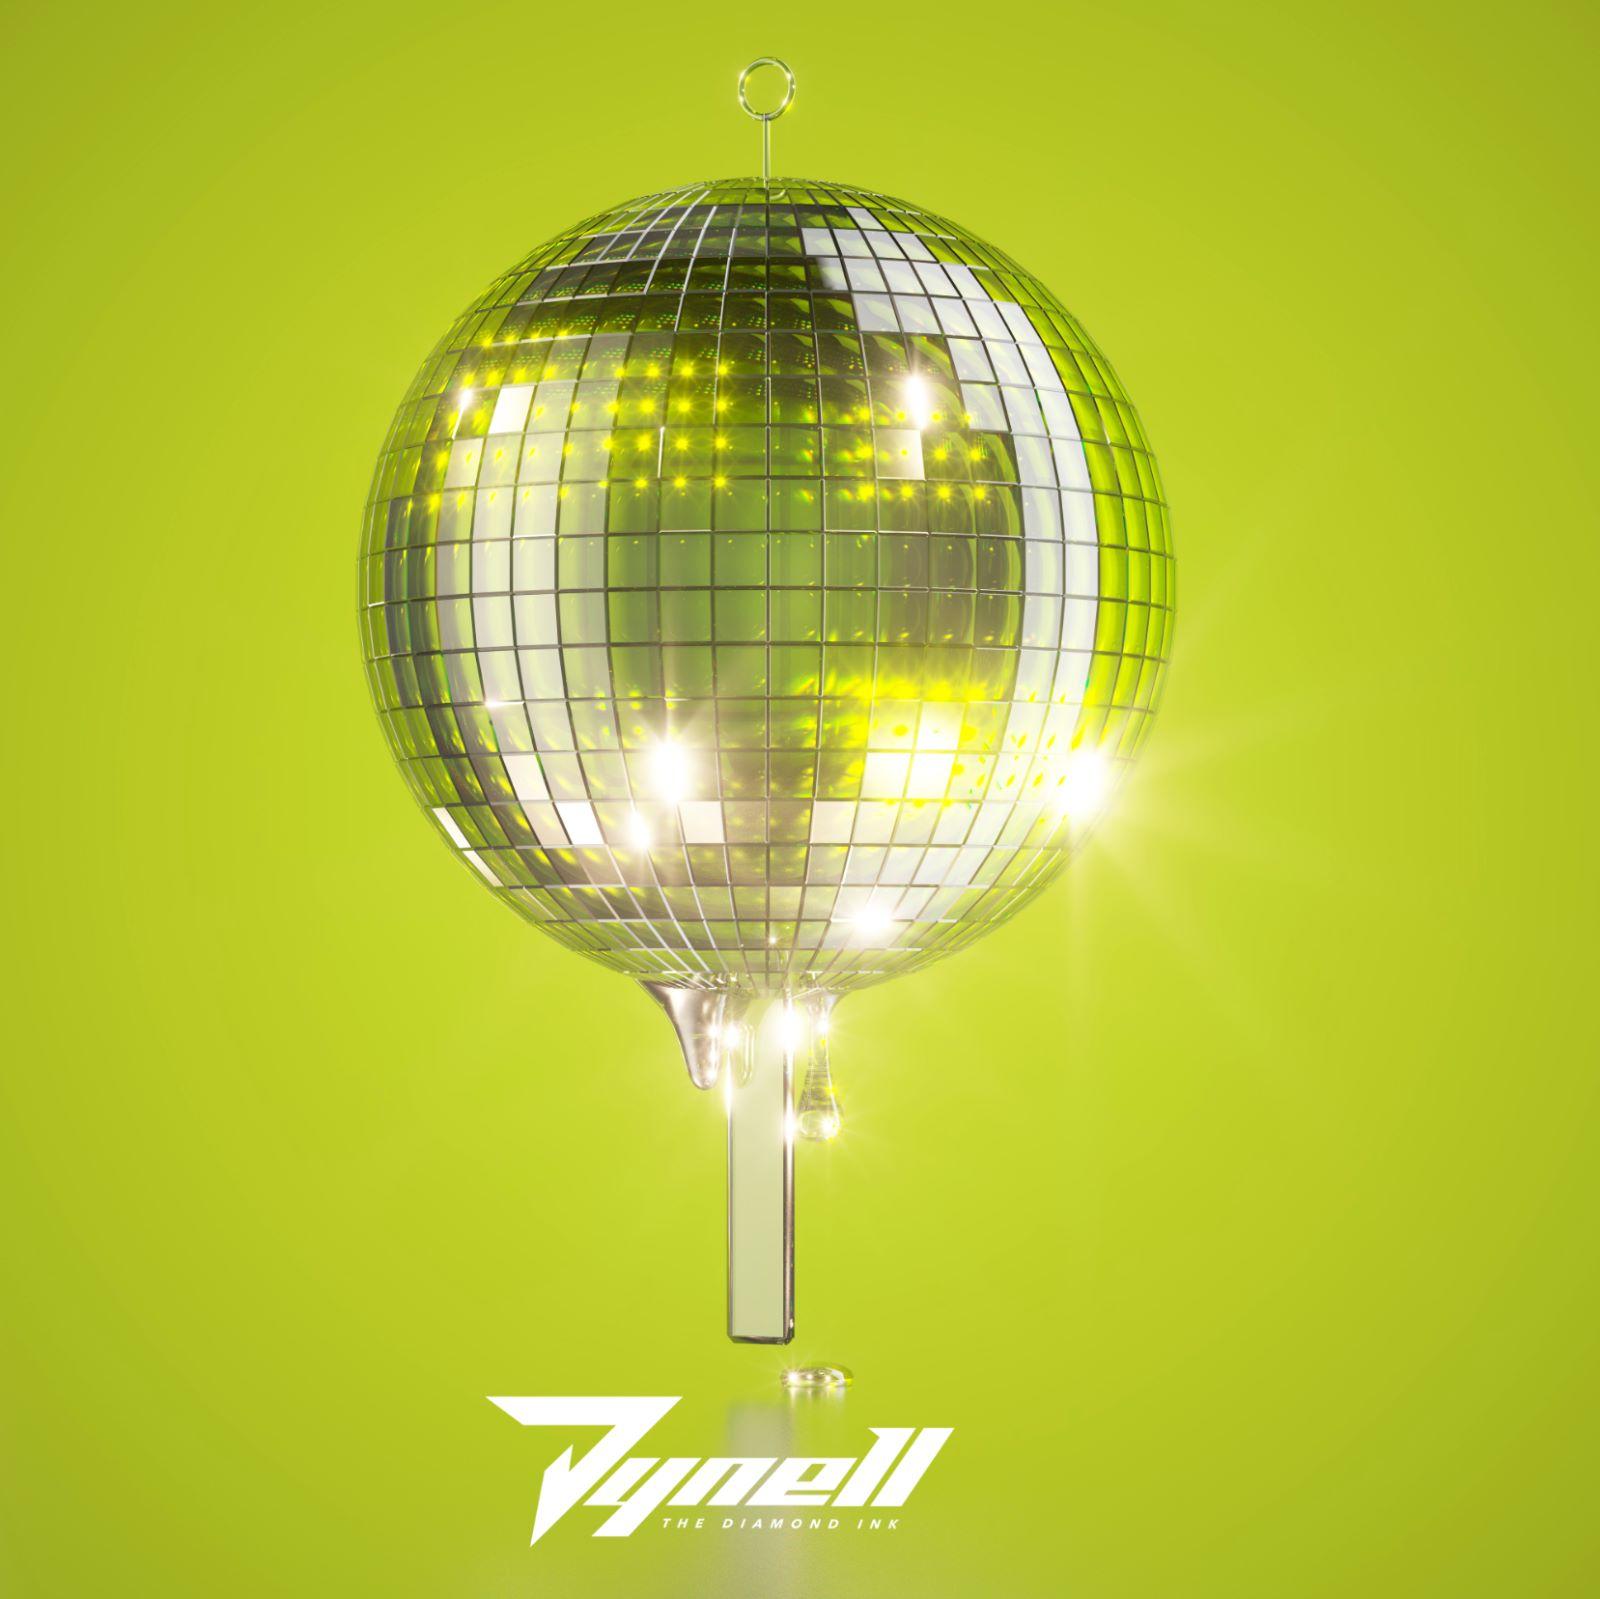 DYNELL lanza nuevo tema titulado “Venbai”